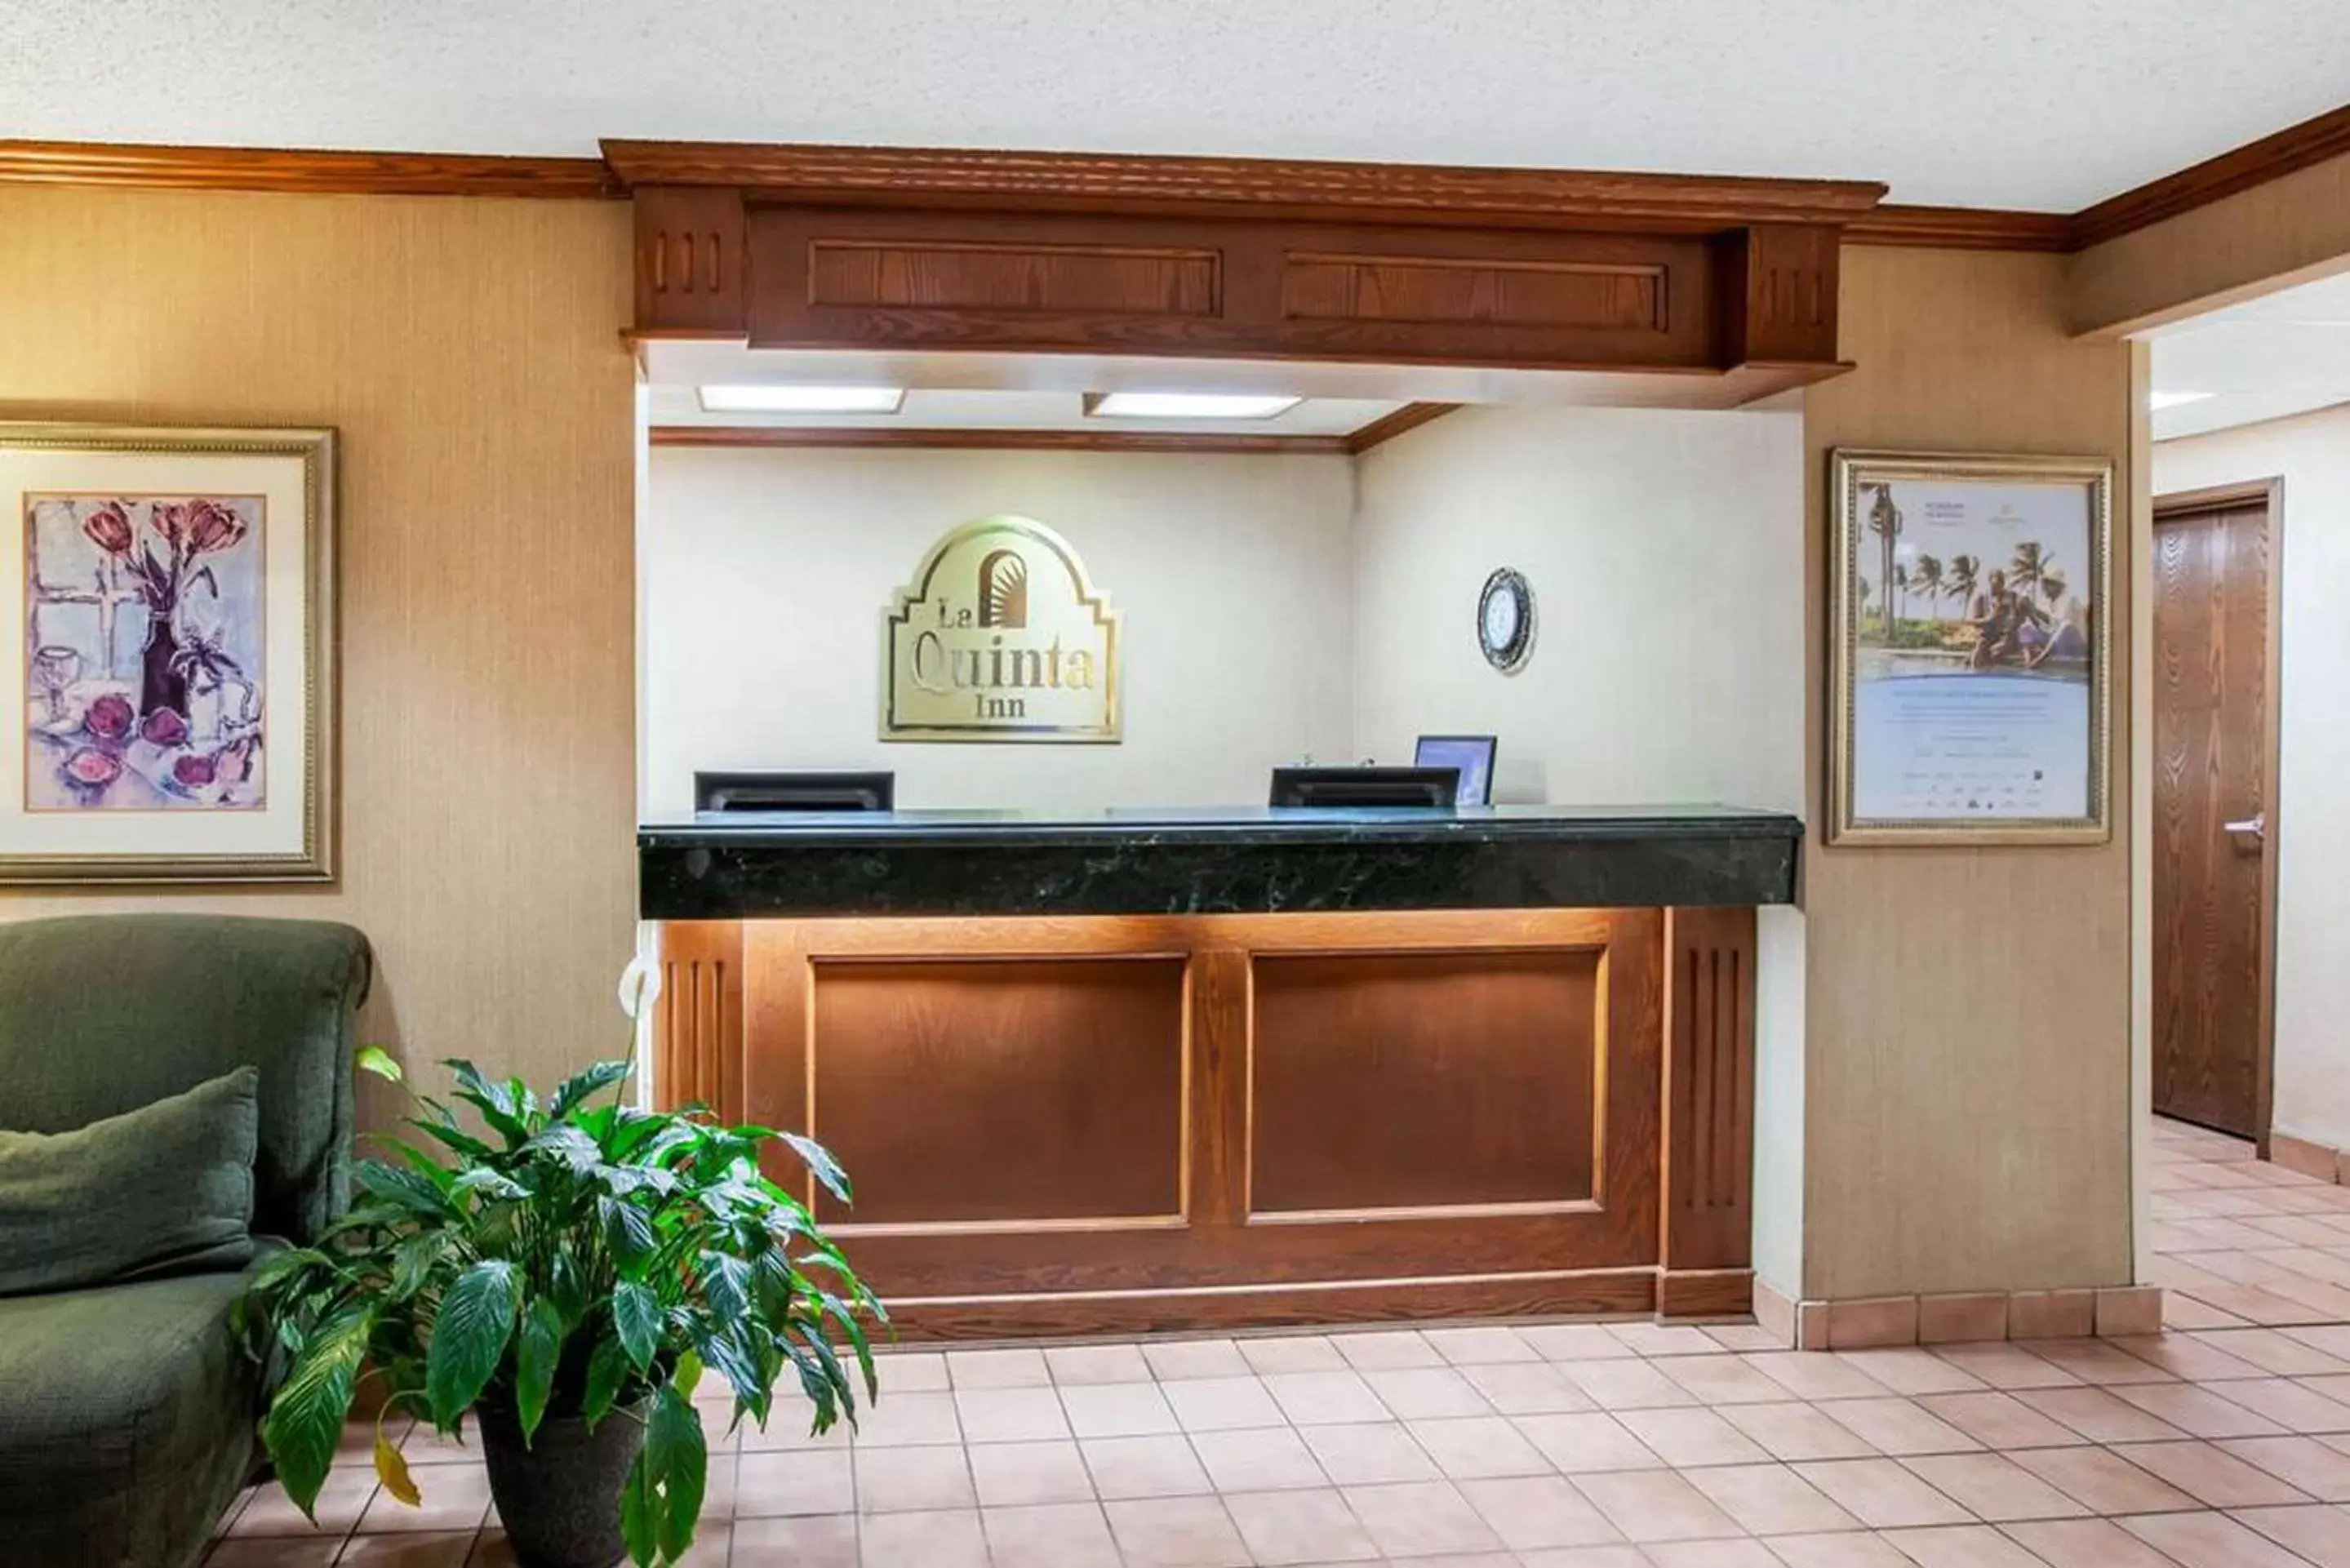 Lobby or reception, Lobby/Reception in La Quinta Inn by Wyndham Detroit Southgate